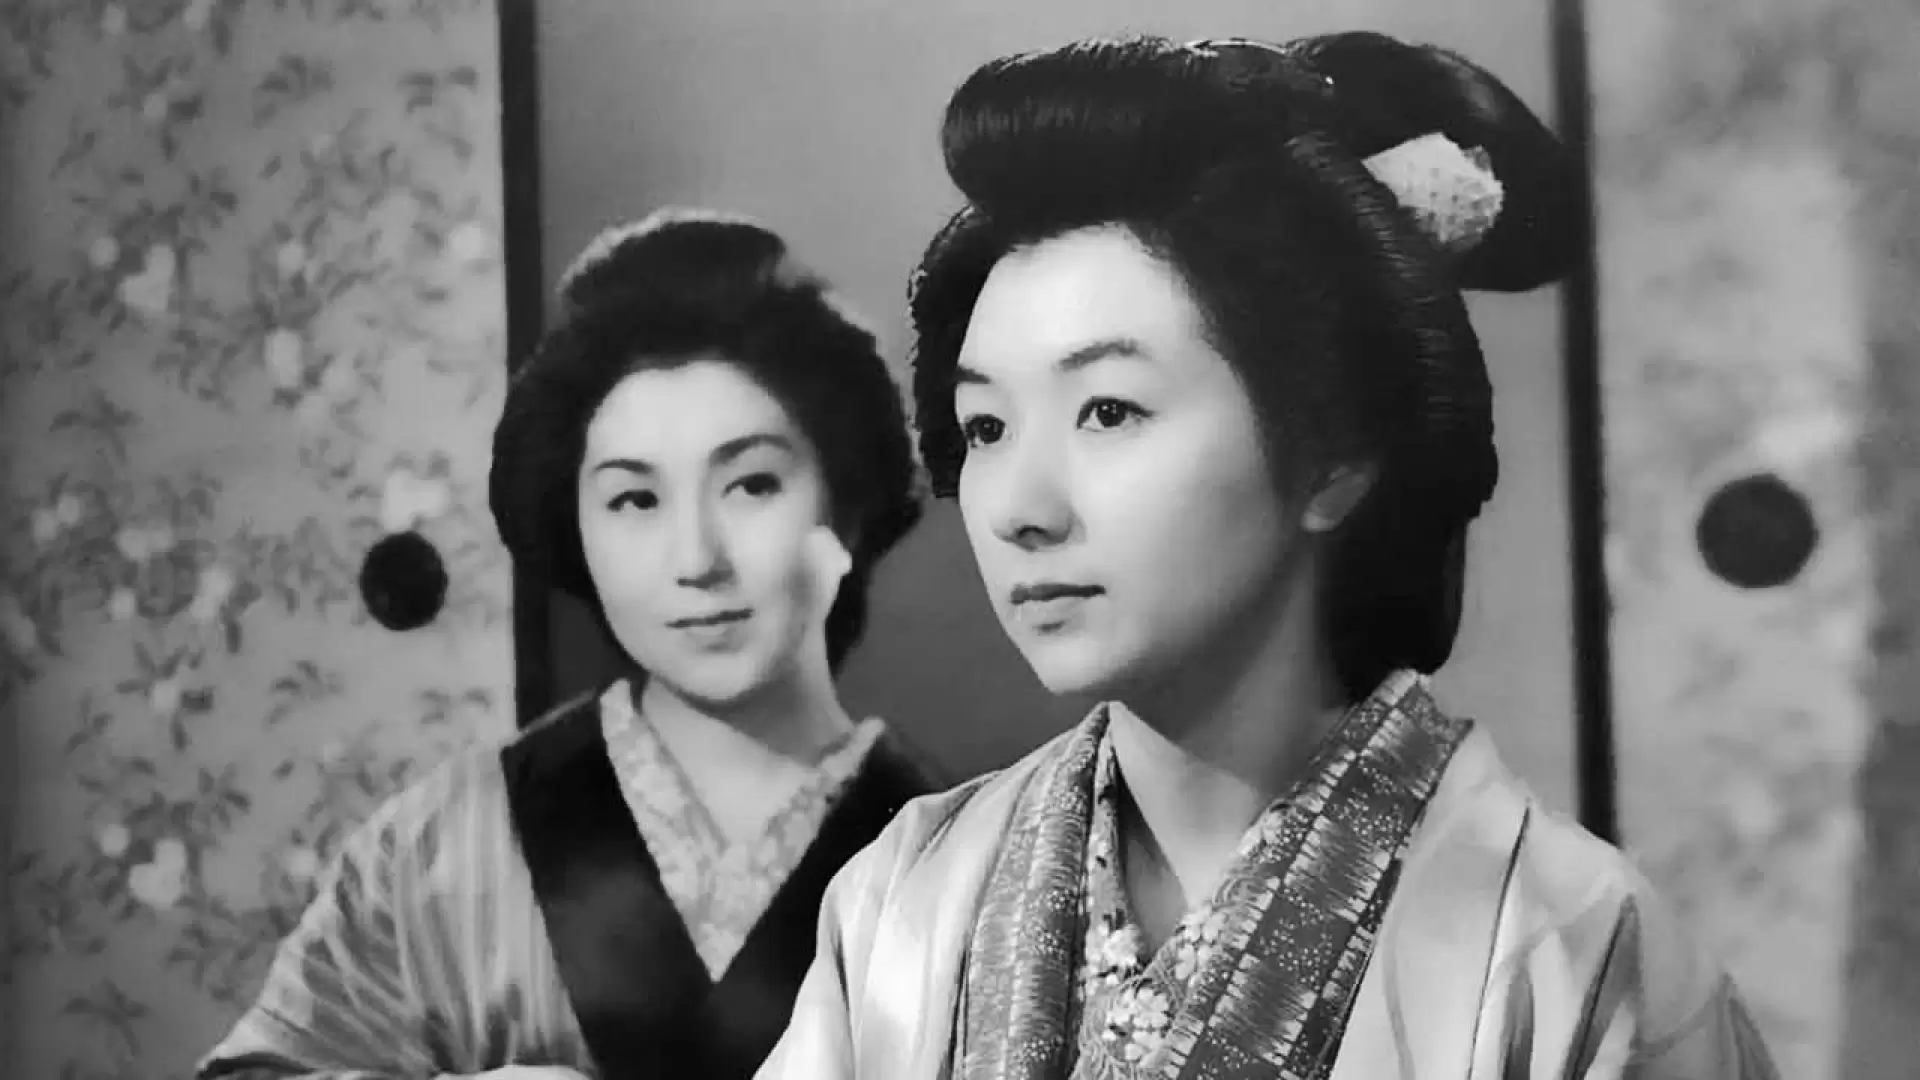 دانلود فیلم Arakure 1957 (زن بی نام)